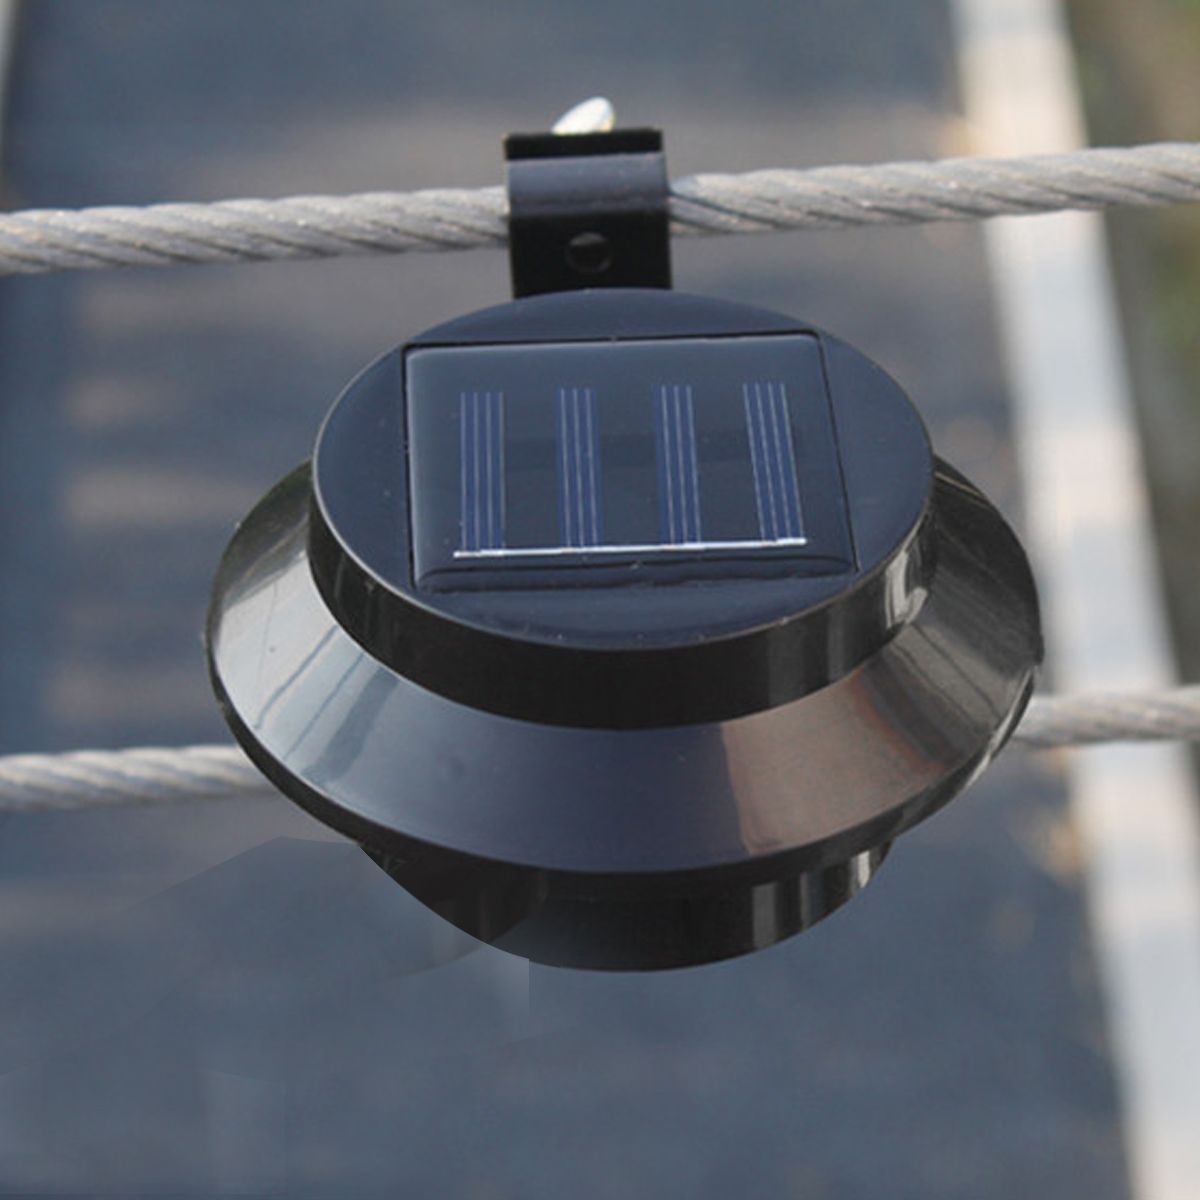 LED-Solar-Gutter-Light-Waterproof-Outdoor-Fence-Street-Garden-Yard-Pathway-Lawn-Sink-Wall-Lamp-1738519